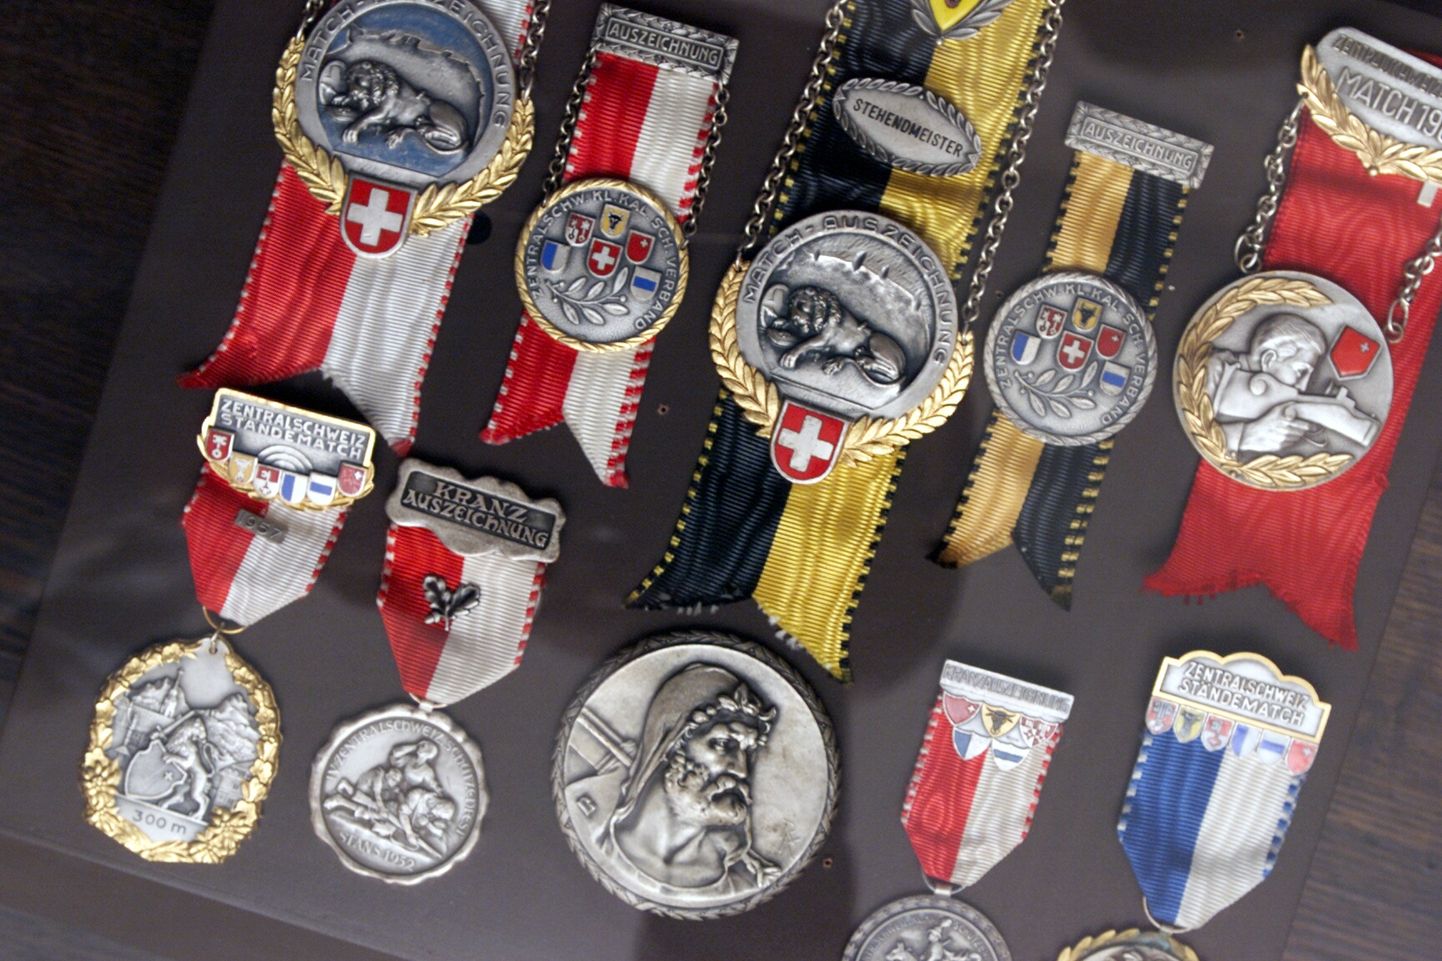 Eesti laskesportlased võitsid omal ajal kamaluga medaleid.